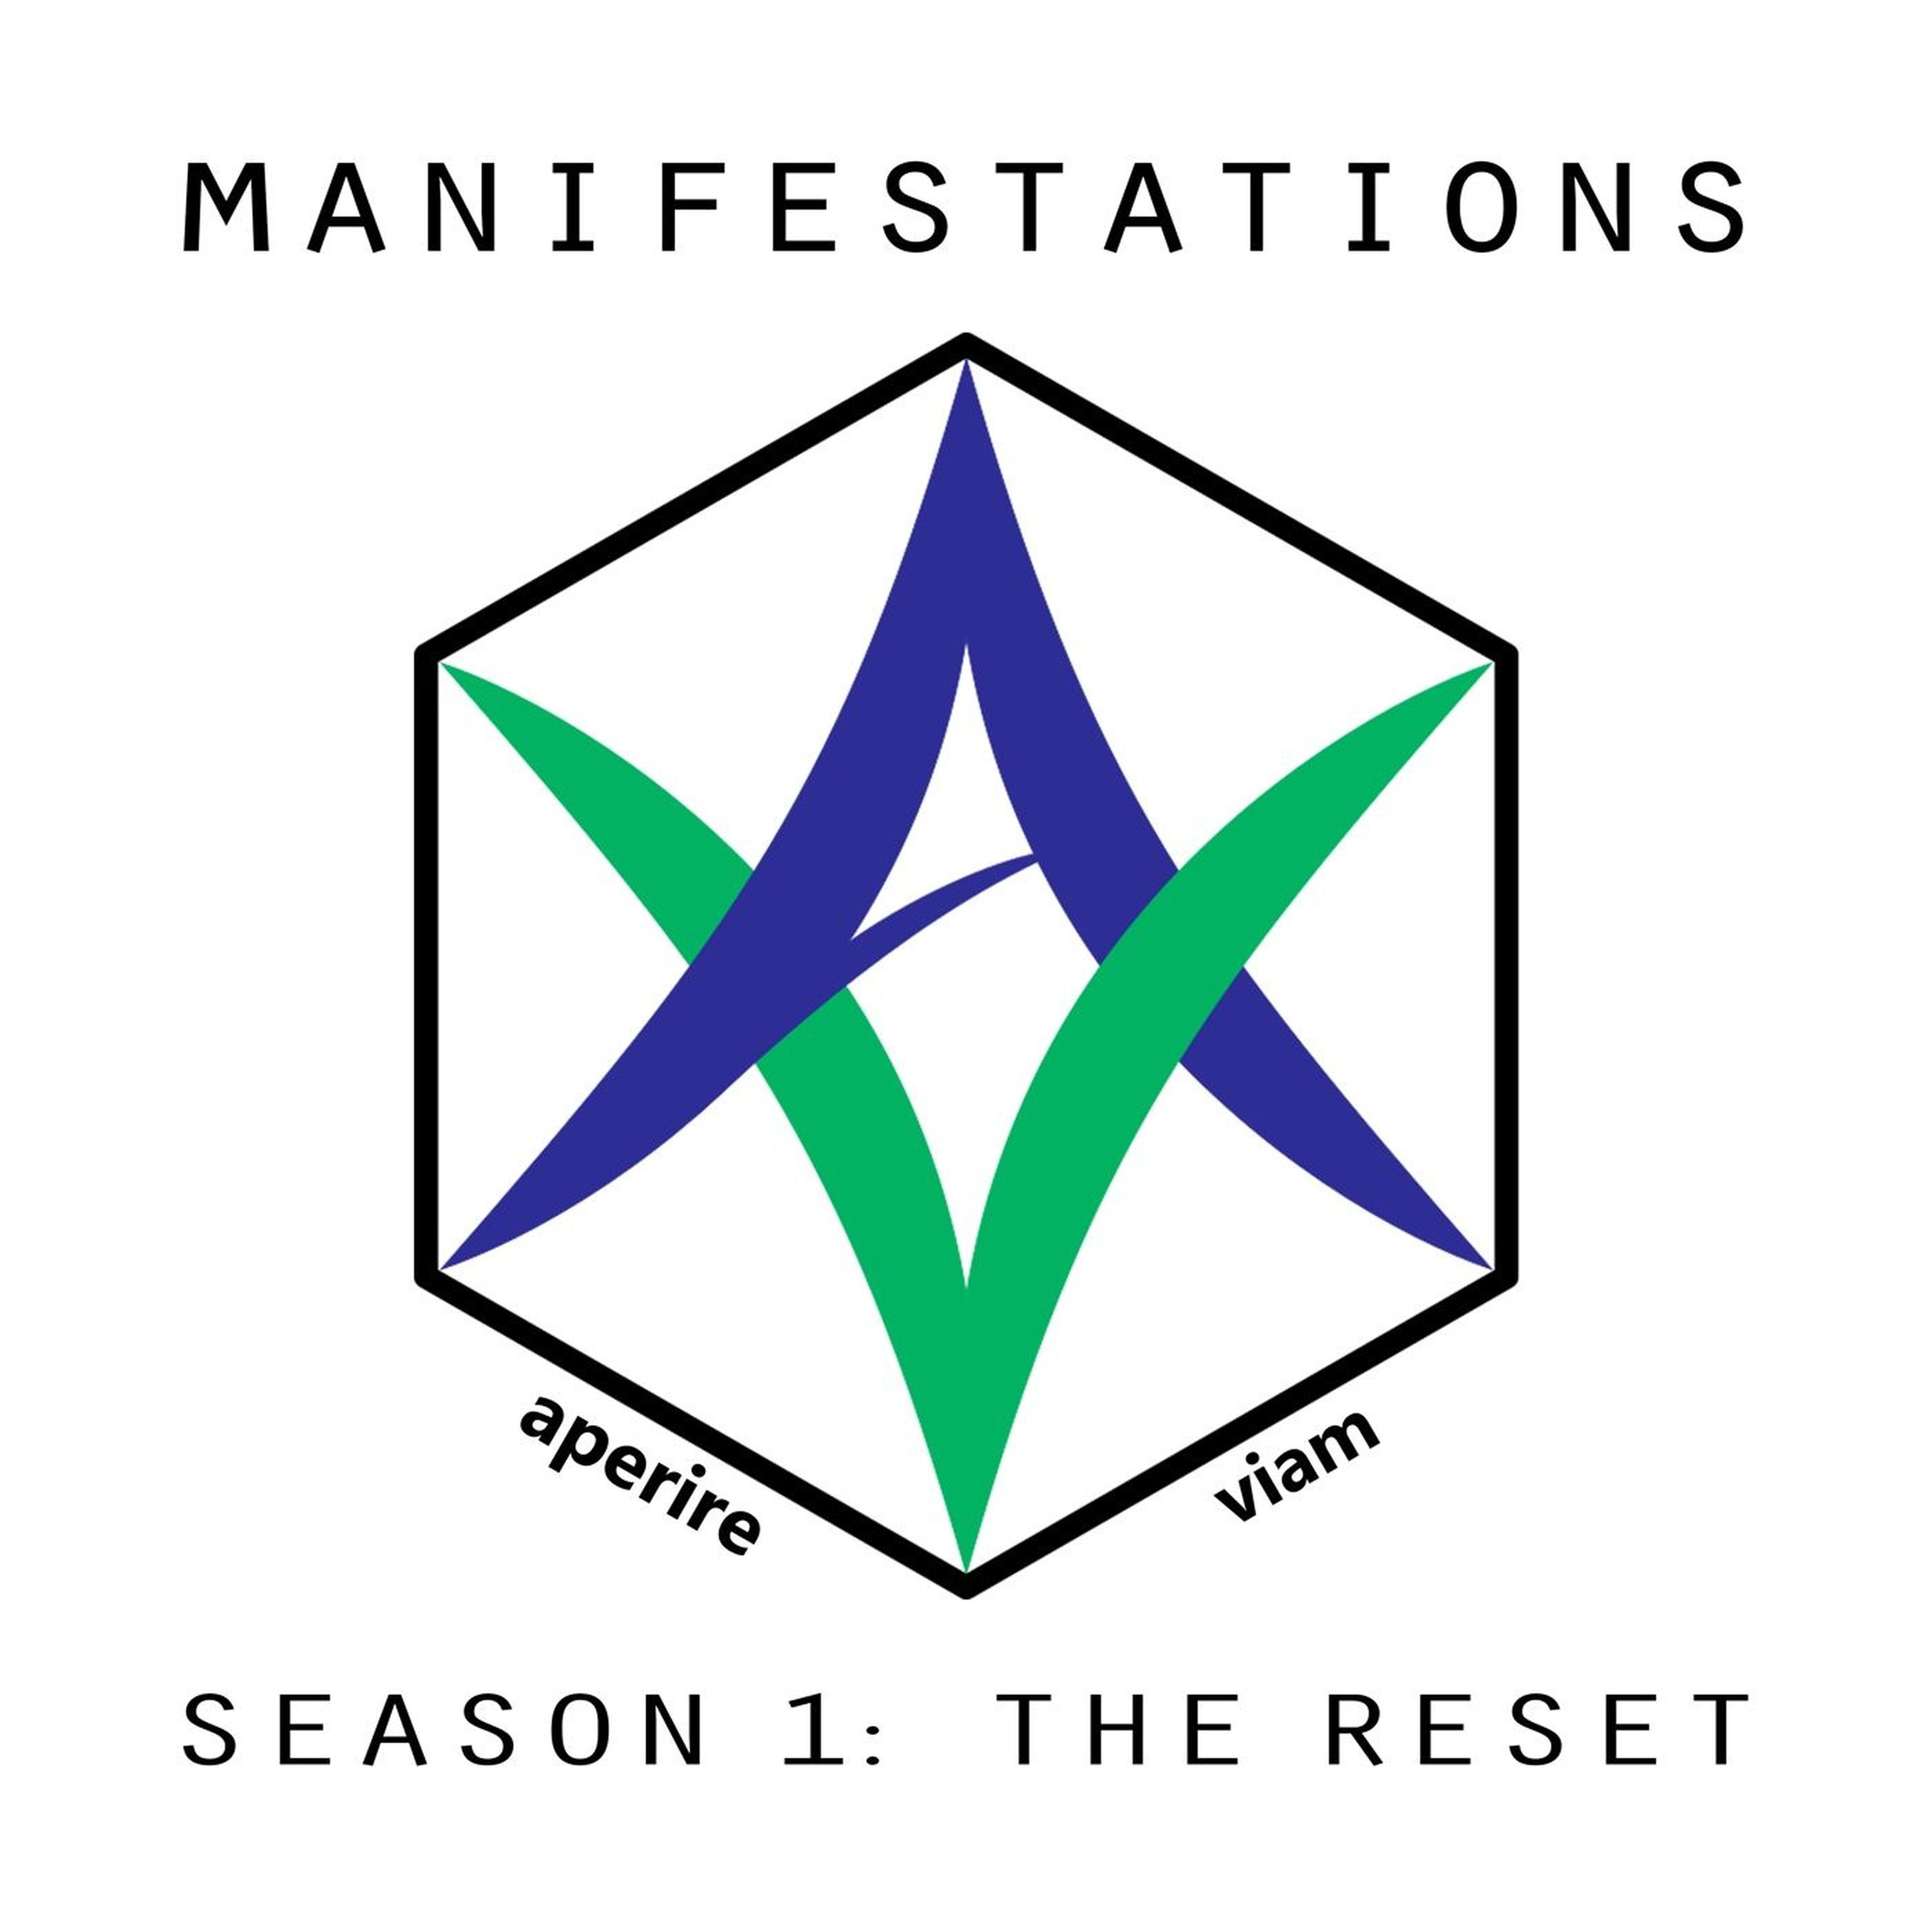 MANIFESTATIONS S01 E05 Beginnings